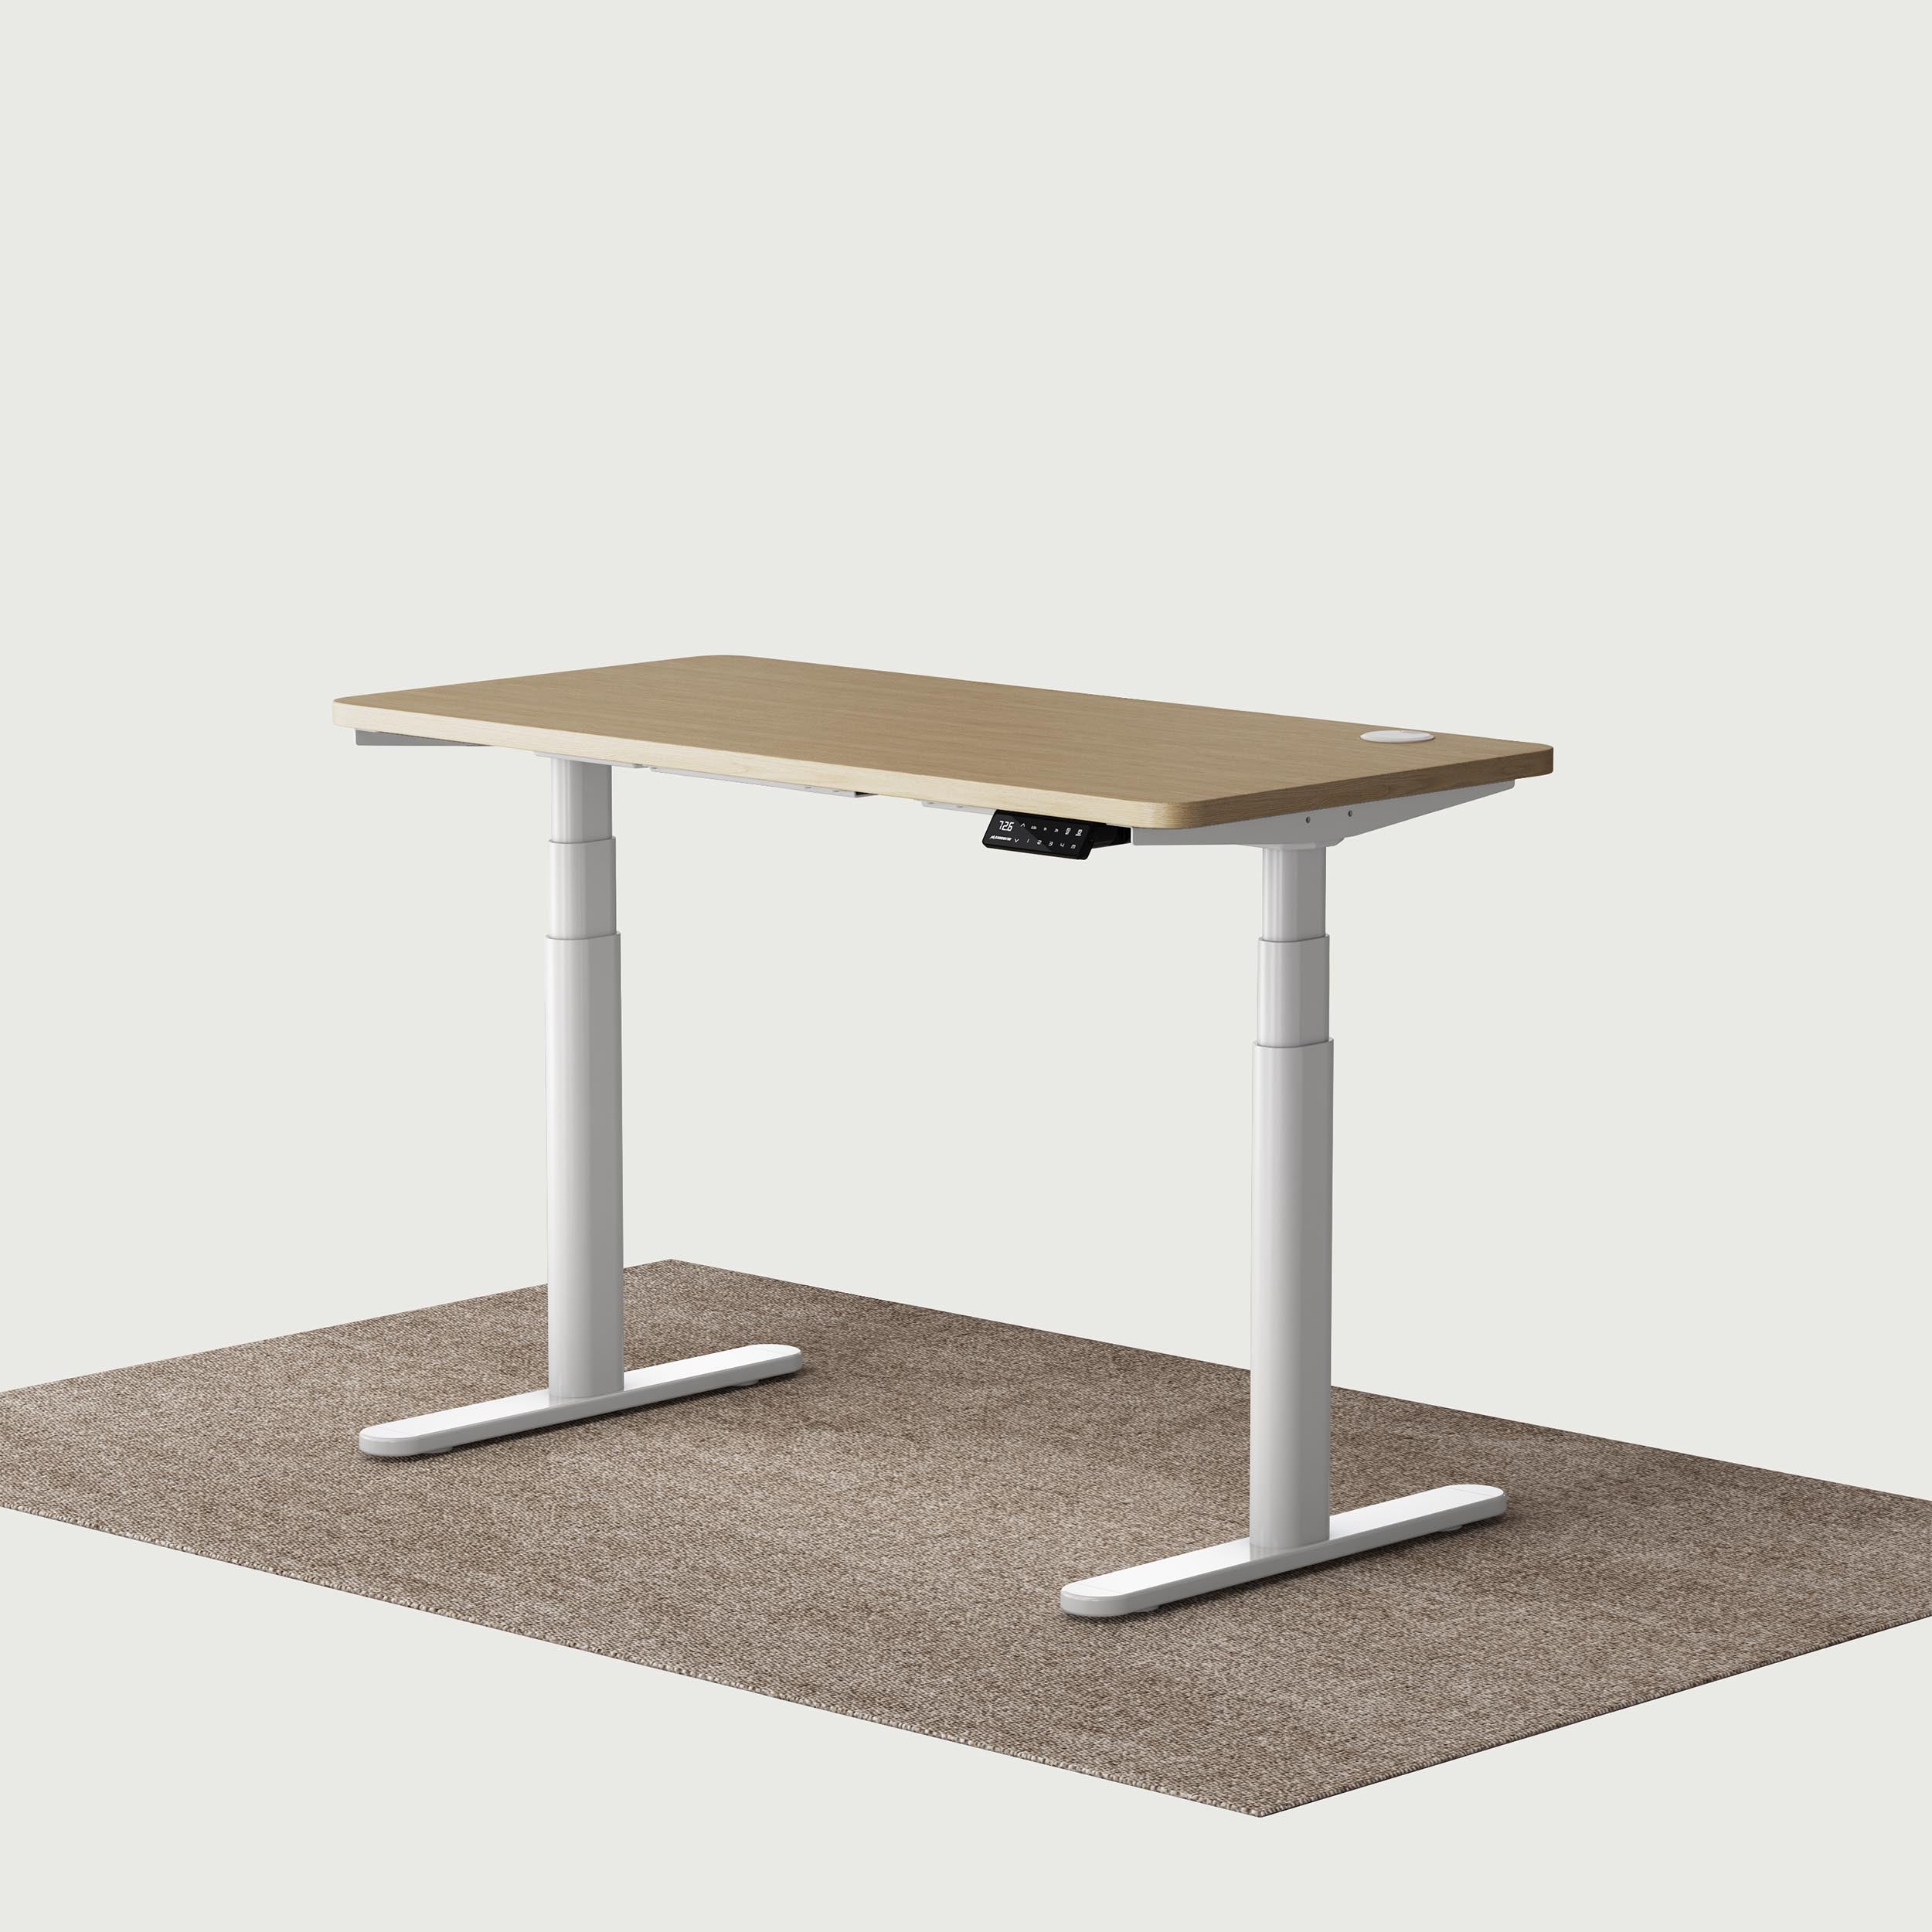 TH2 Pro Plus blanco ovalado escritorio eléctrico regulable en altura con escritorio de roble 120x60 cm